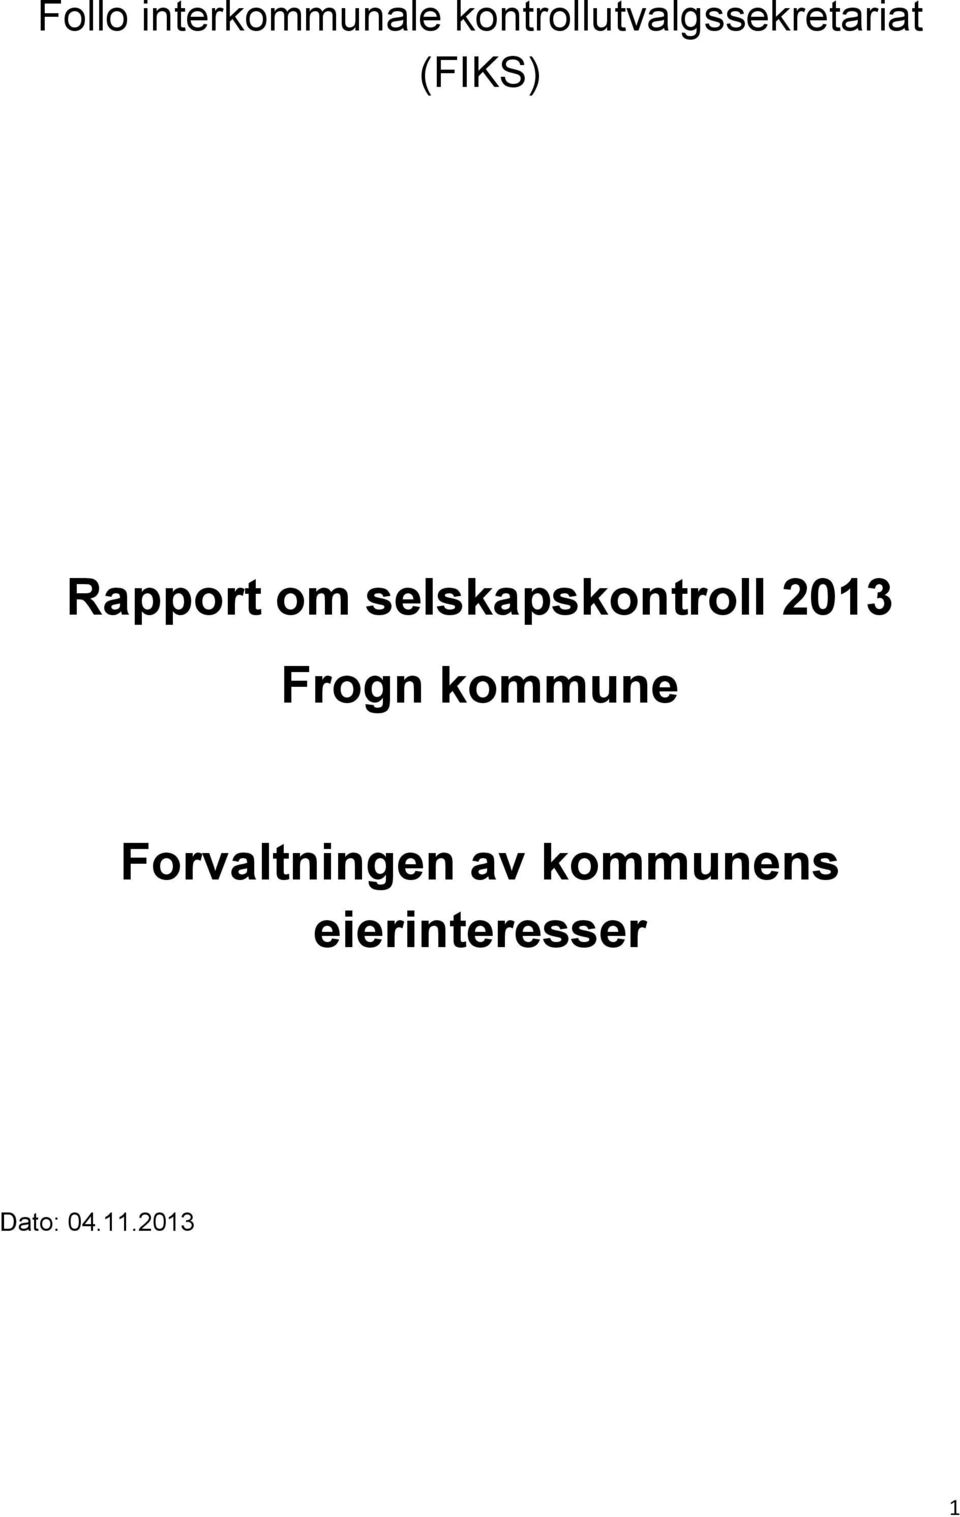 Rapport om selskapskontroll 2013 Frogn